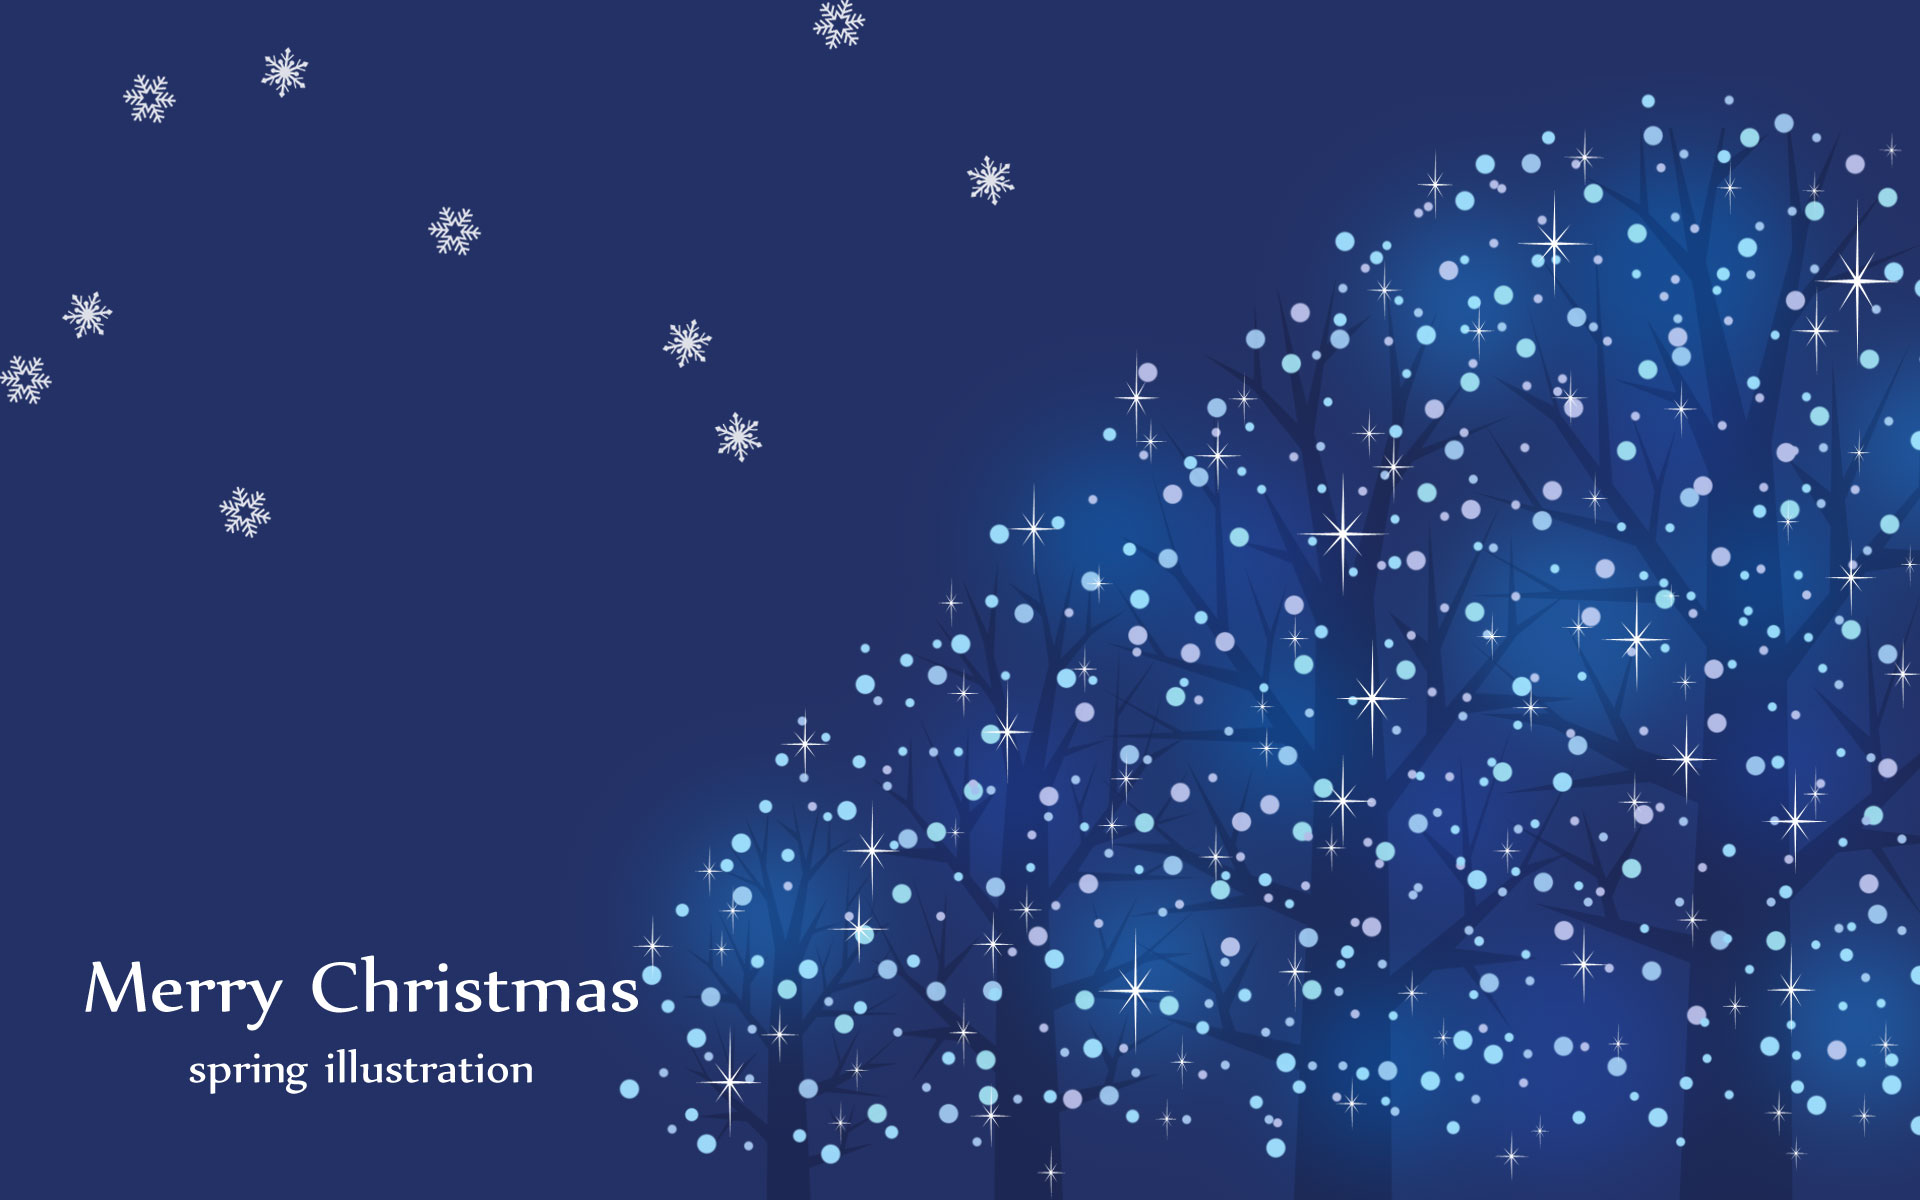 ブルーイルミネーション クリスマスのイラストpc壁紙 背景 季節のイラストpc壁紙